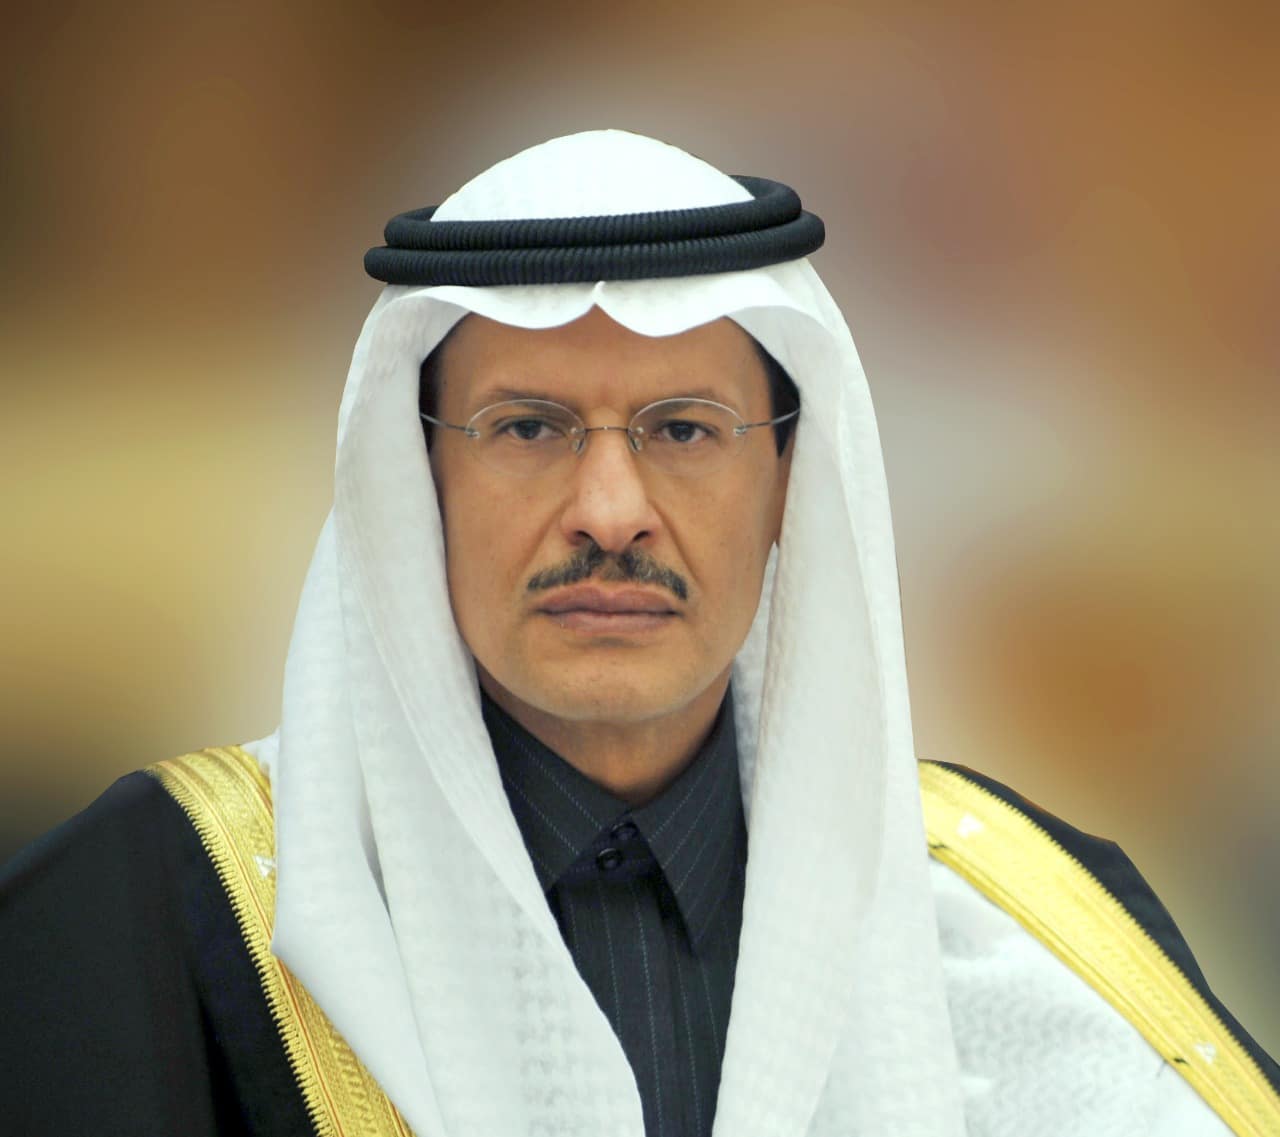 His Royal Highness Prince Abdulaziz bin Salman Al-Saud